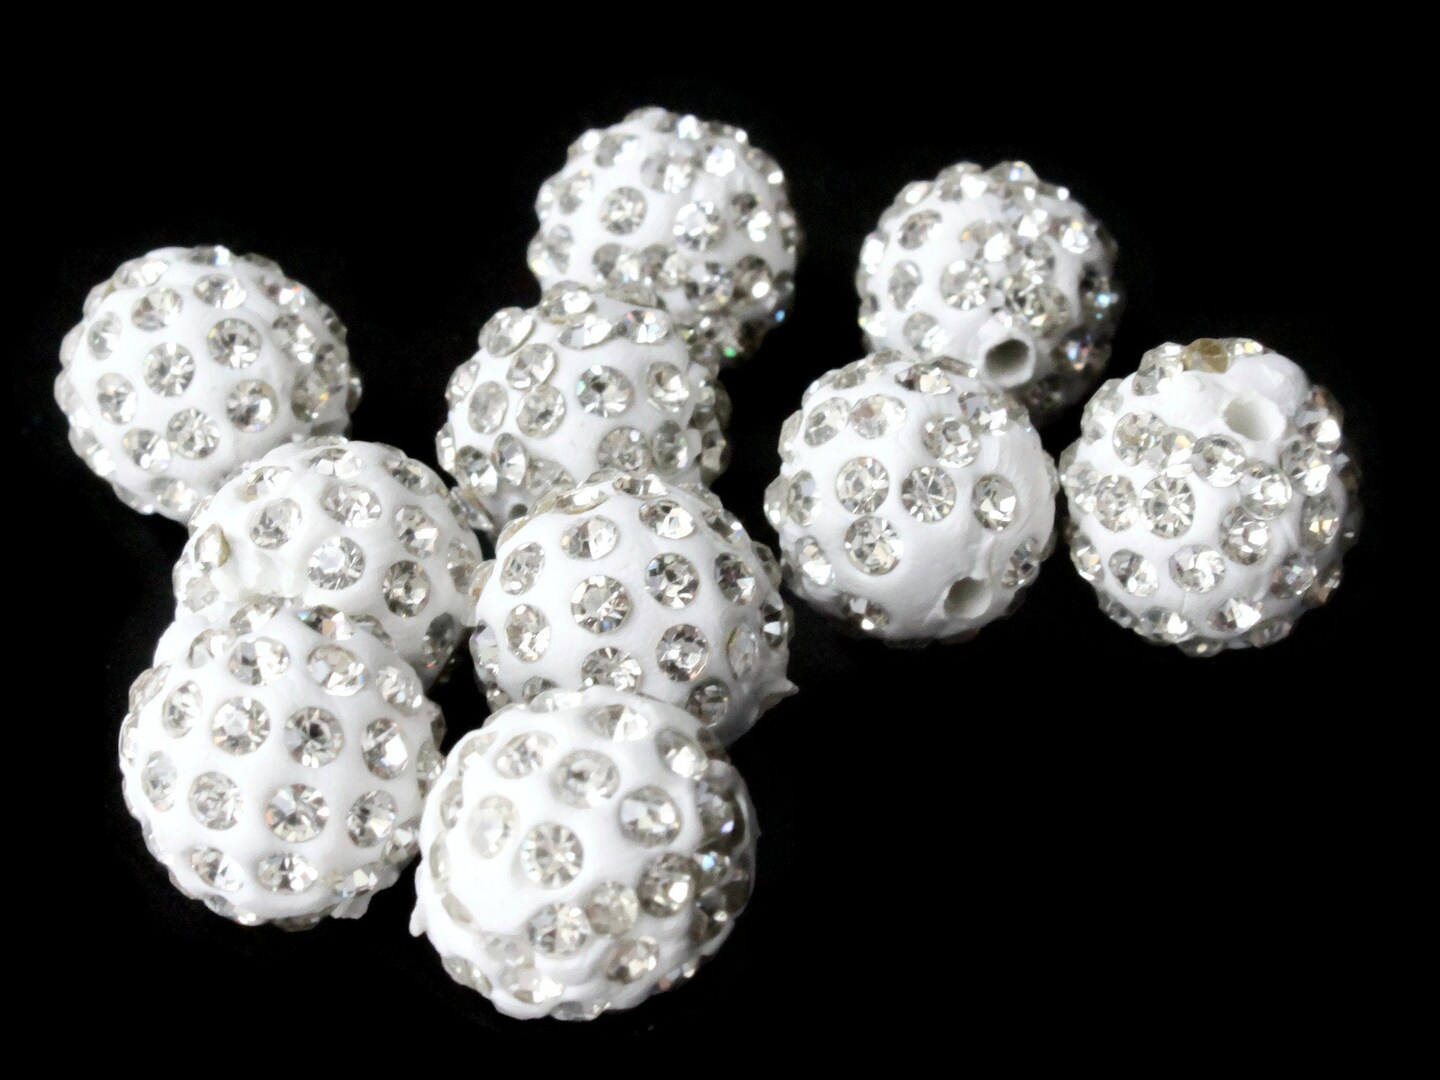 12mm White Rhinestone Round Polymer Clay Beads